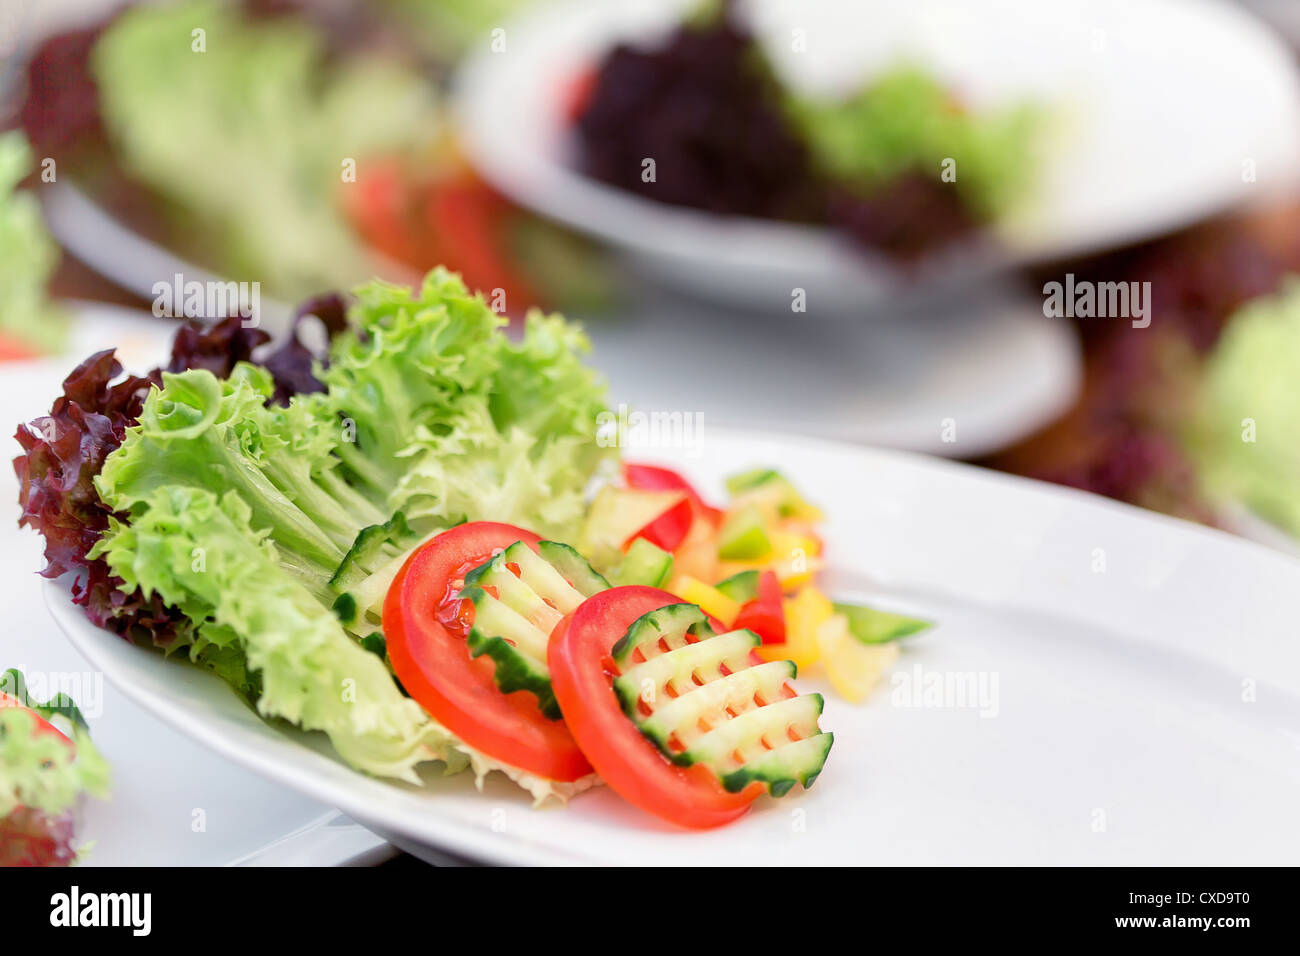 Salat aus frischem Gemüse - Beilagen. Stockfoto